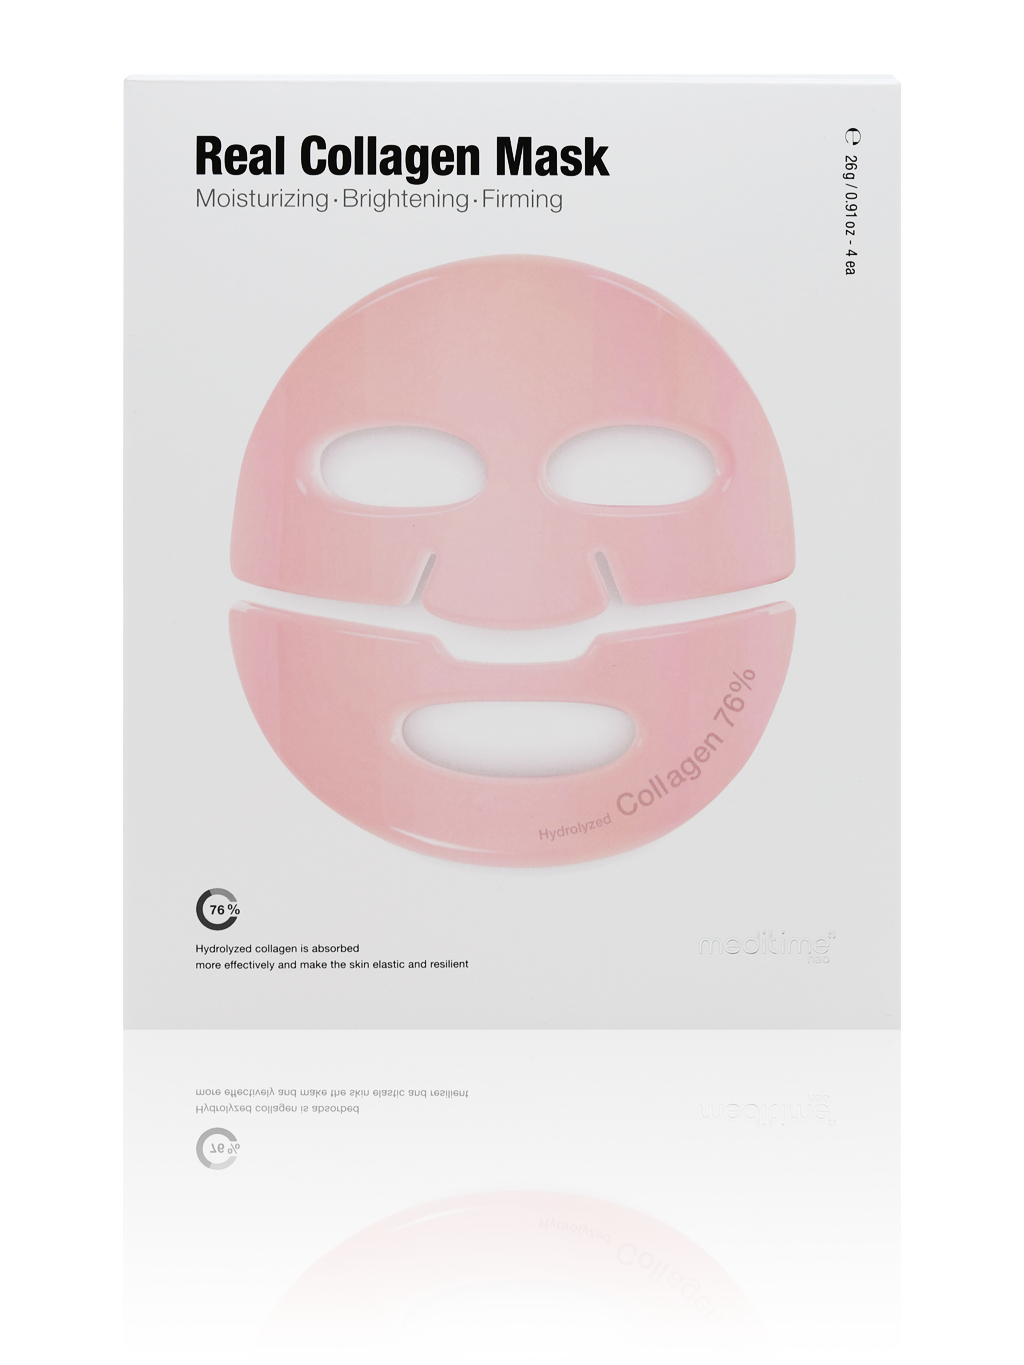 Meditime NEO Real Collagen Mask – Hydrogélová kolagénová pleťová maska, 26g 1x26g, 4x26g: 1x26g